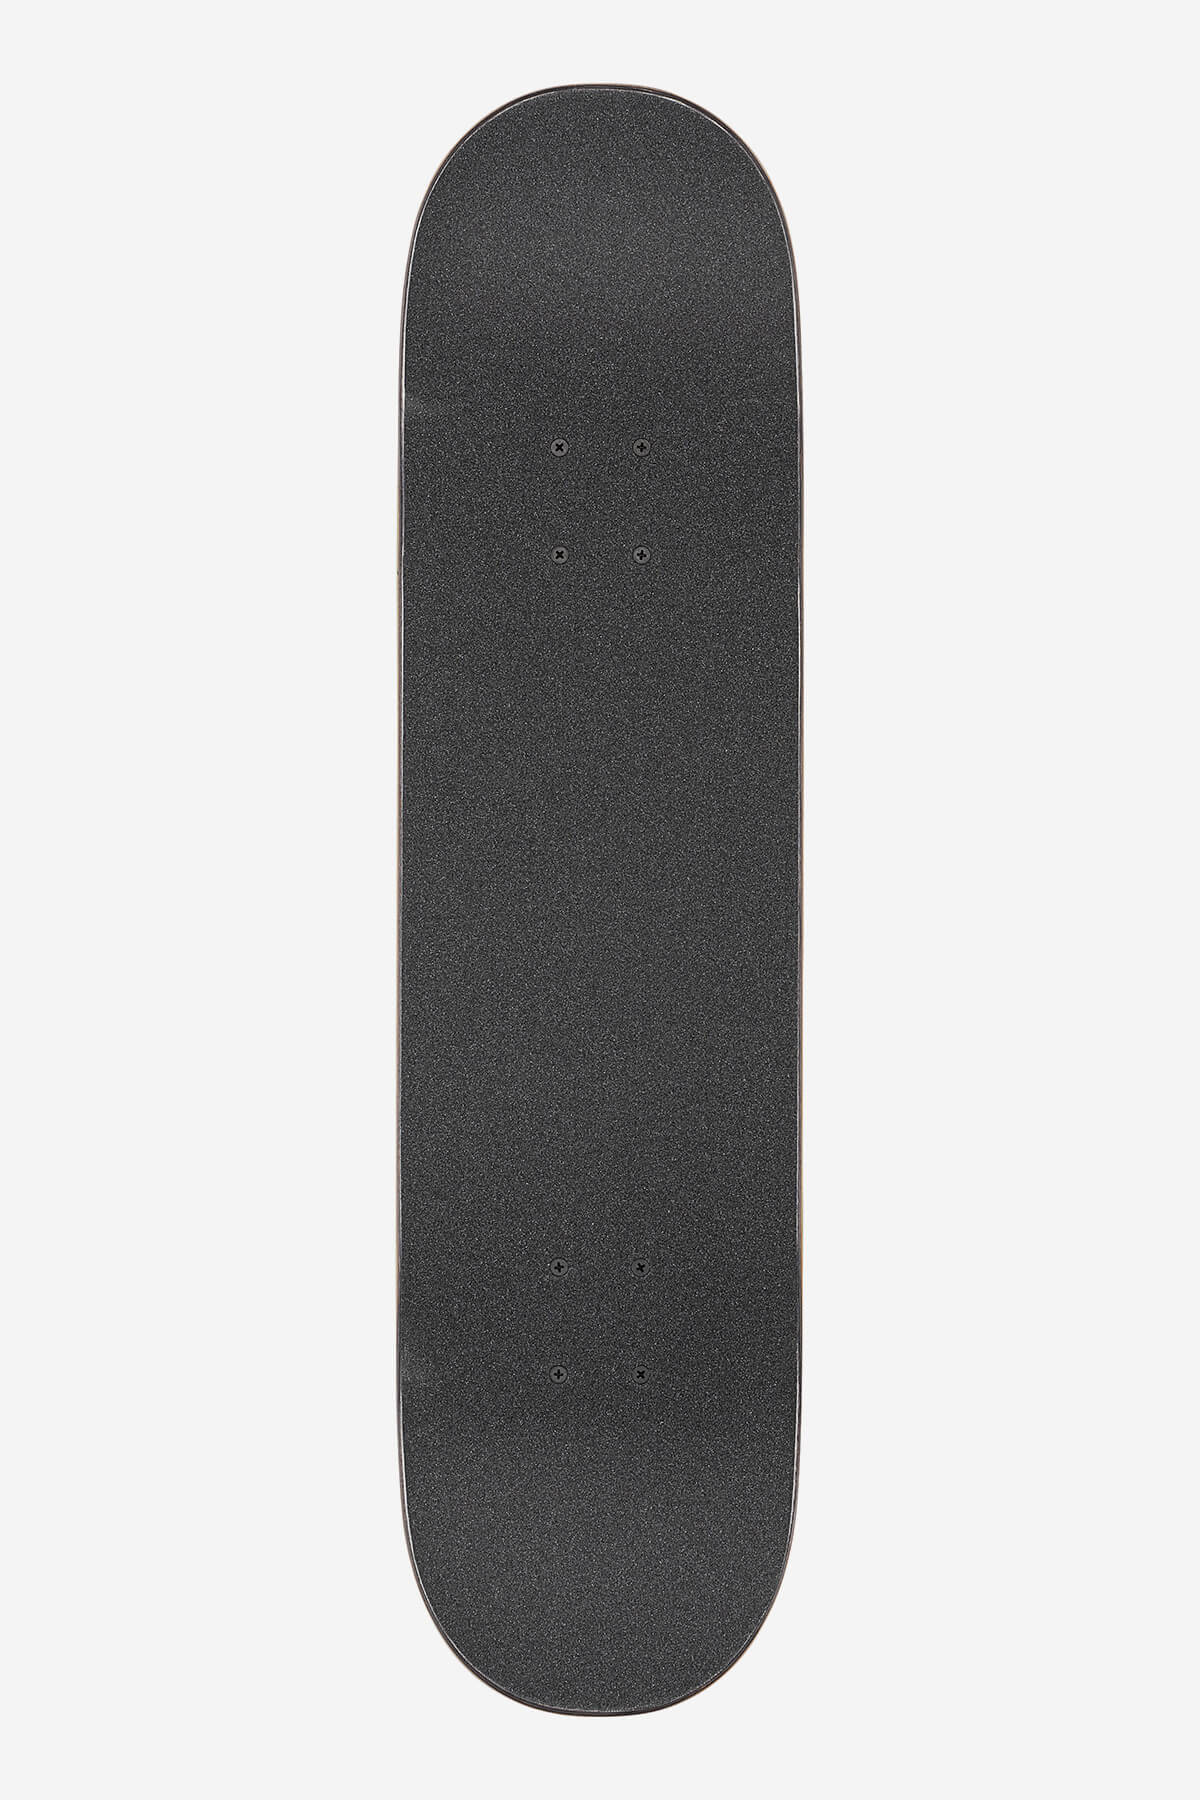 Globe - G1 Natives - Black/Copper - 8.0" Completo Skateboard